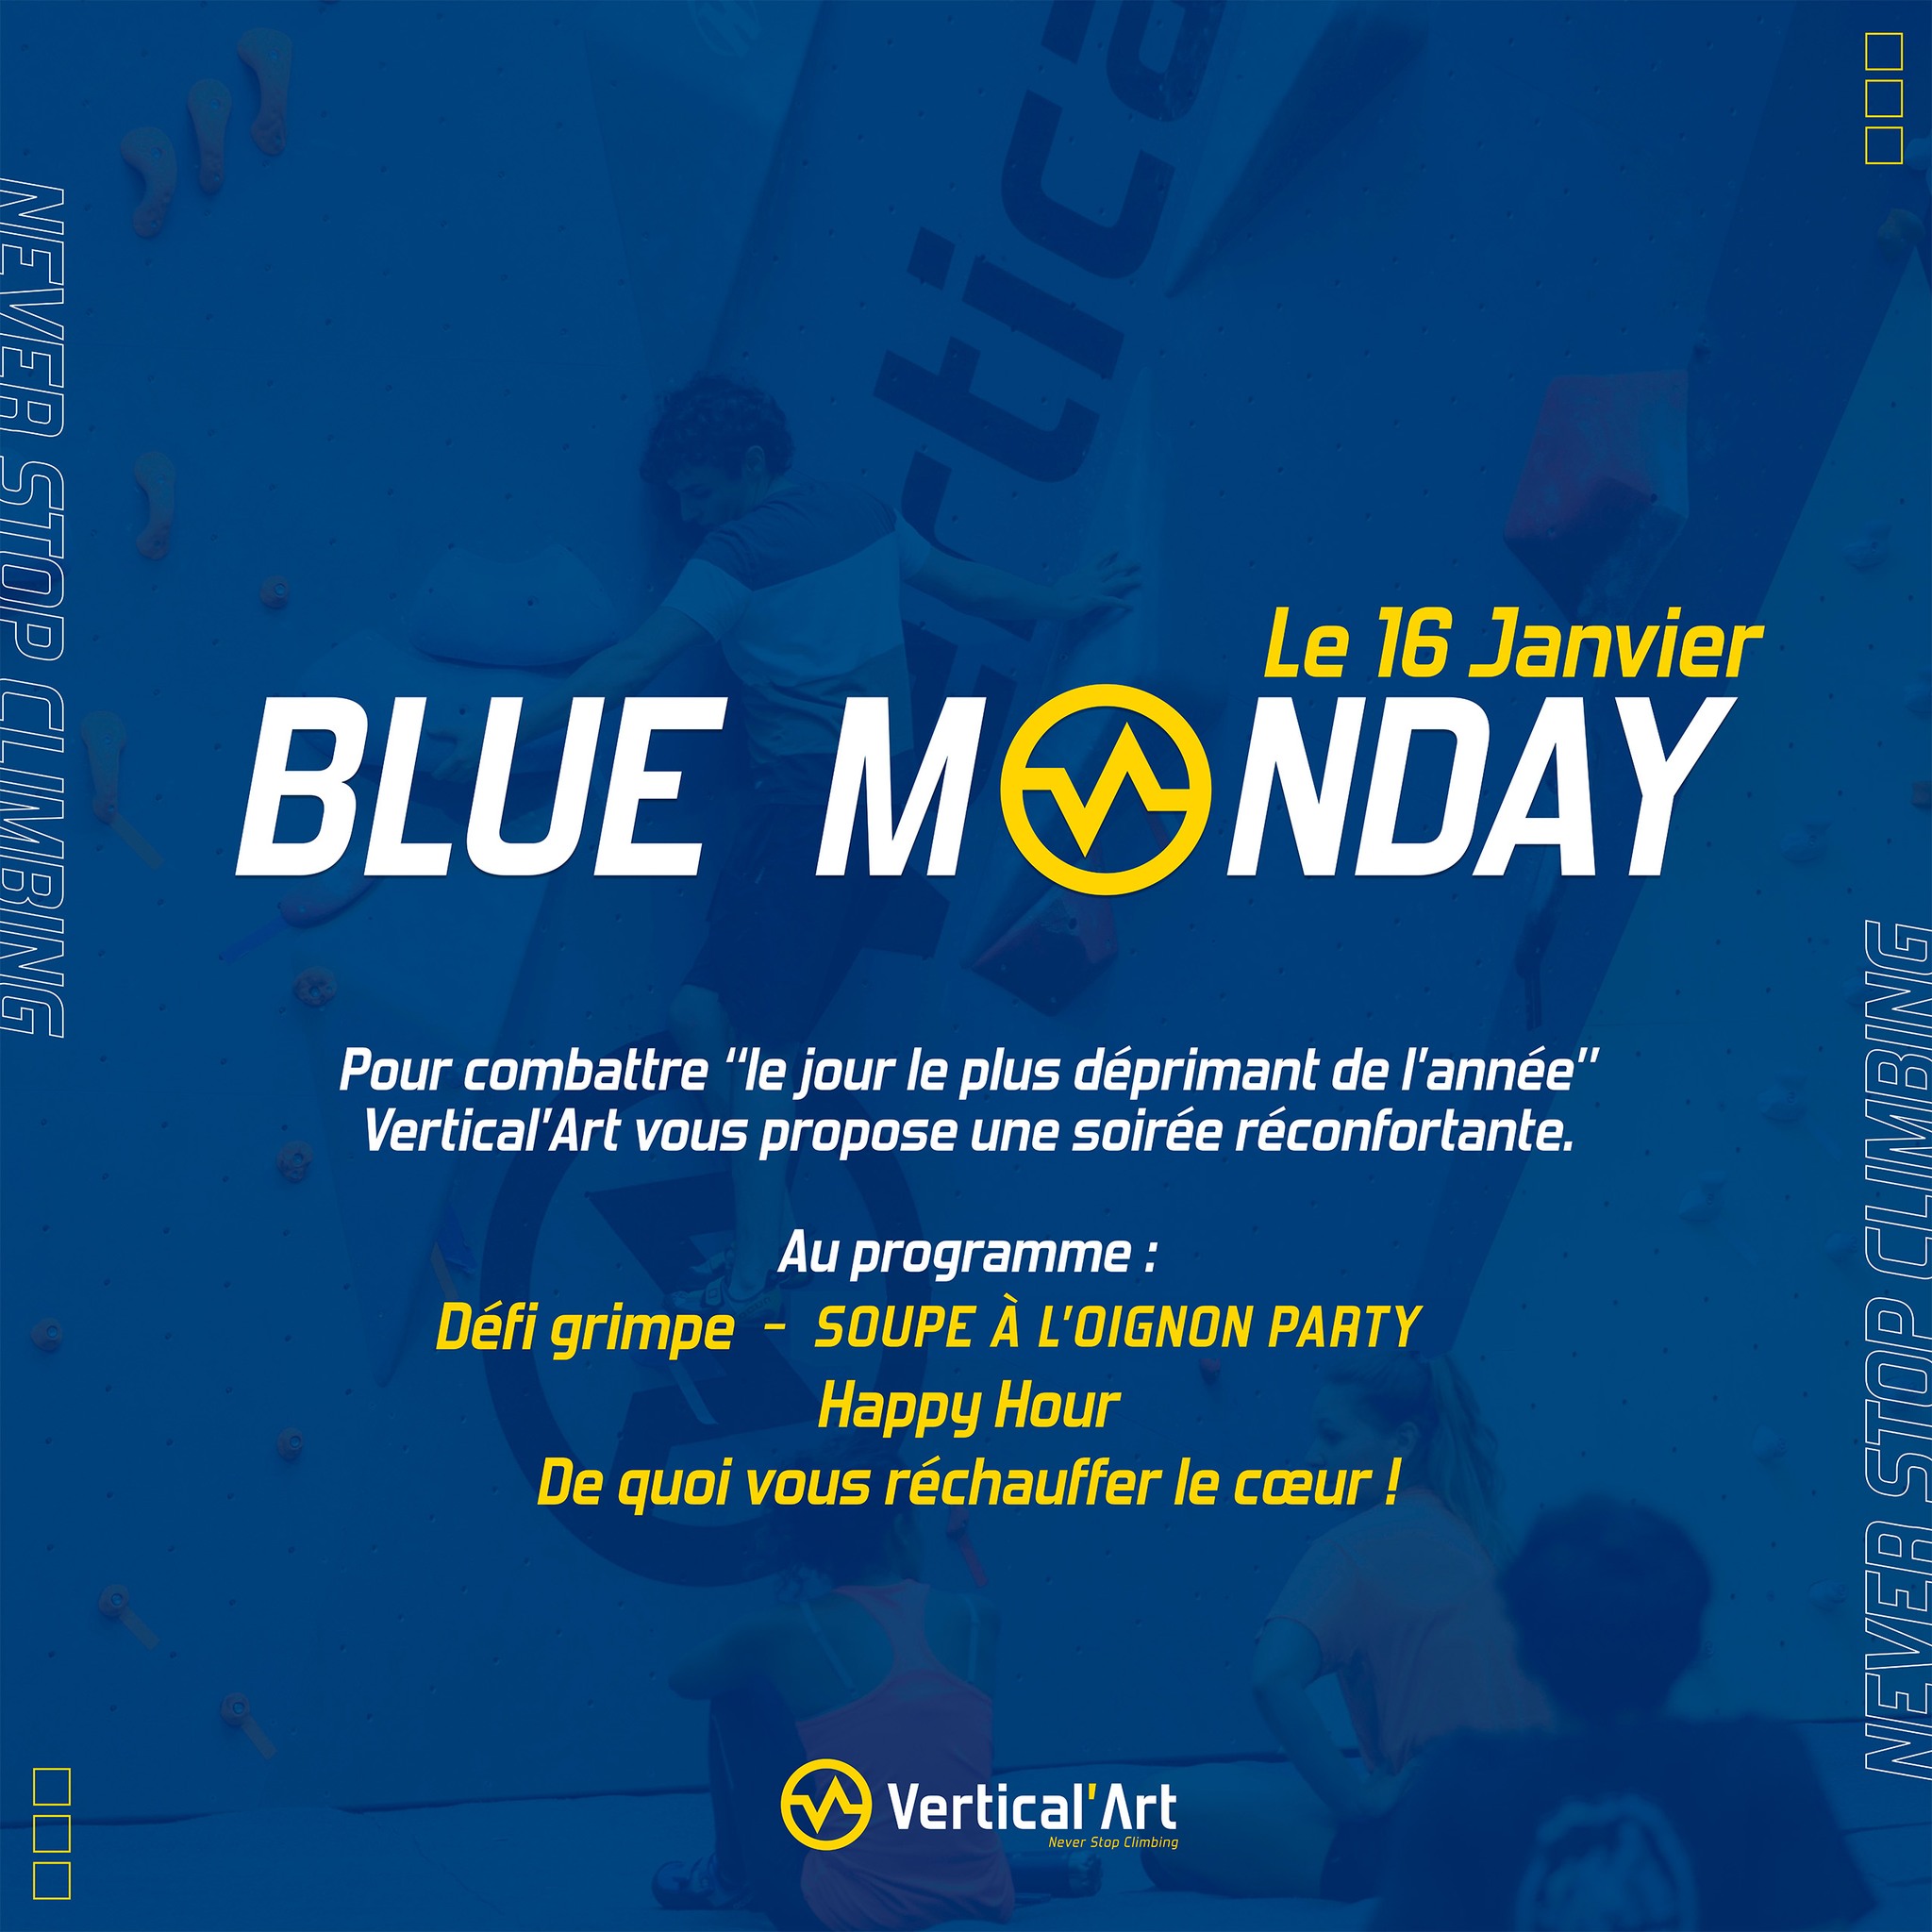 Blue Monday à Vertical'Art Toulon, lundi 16 janvier 2023